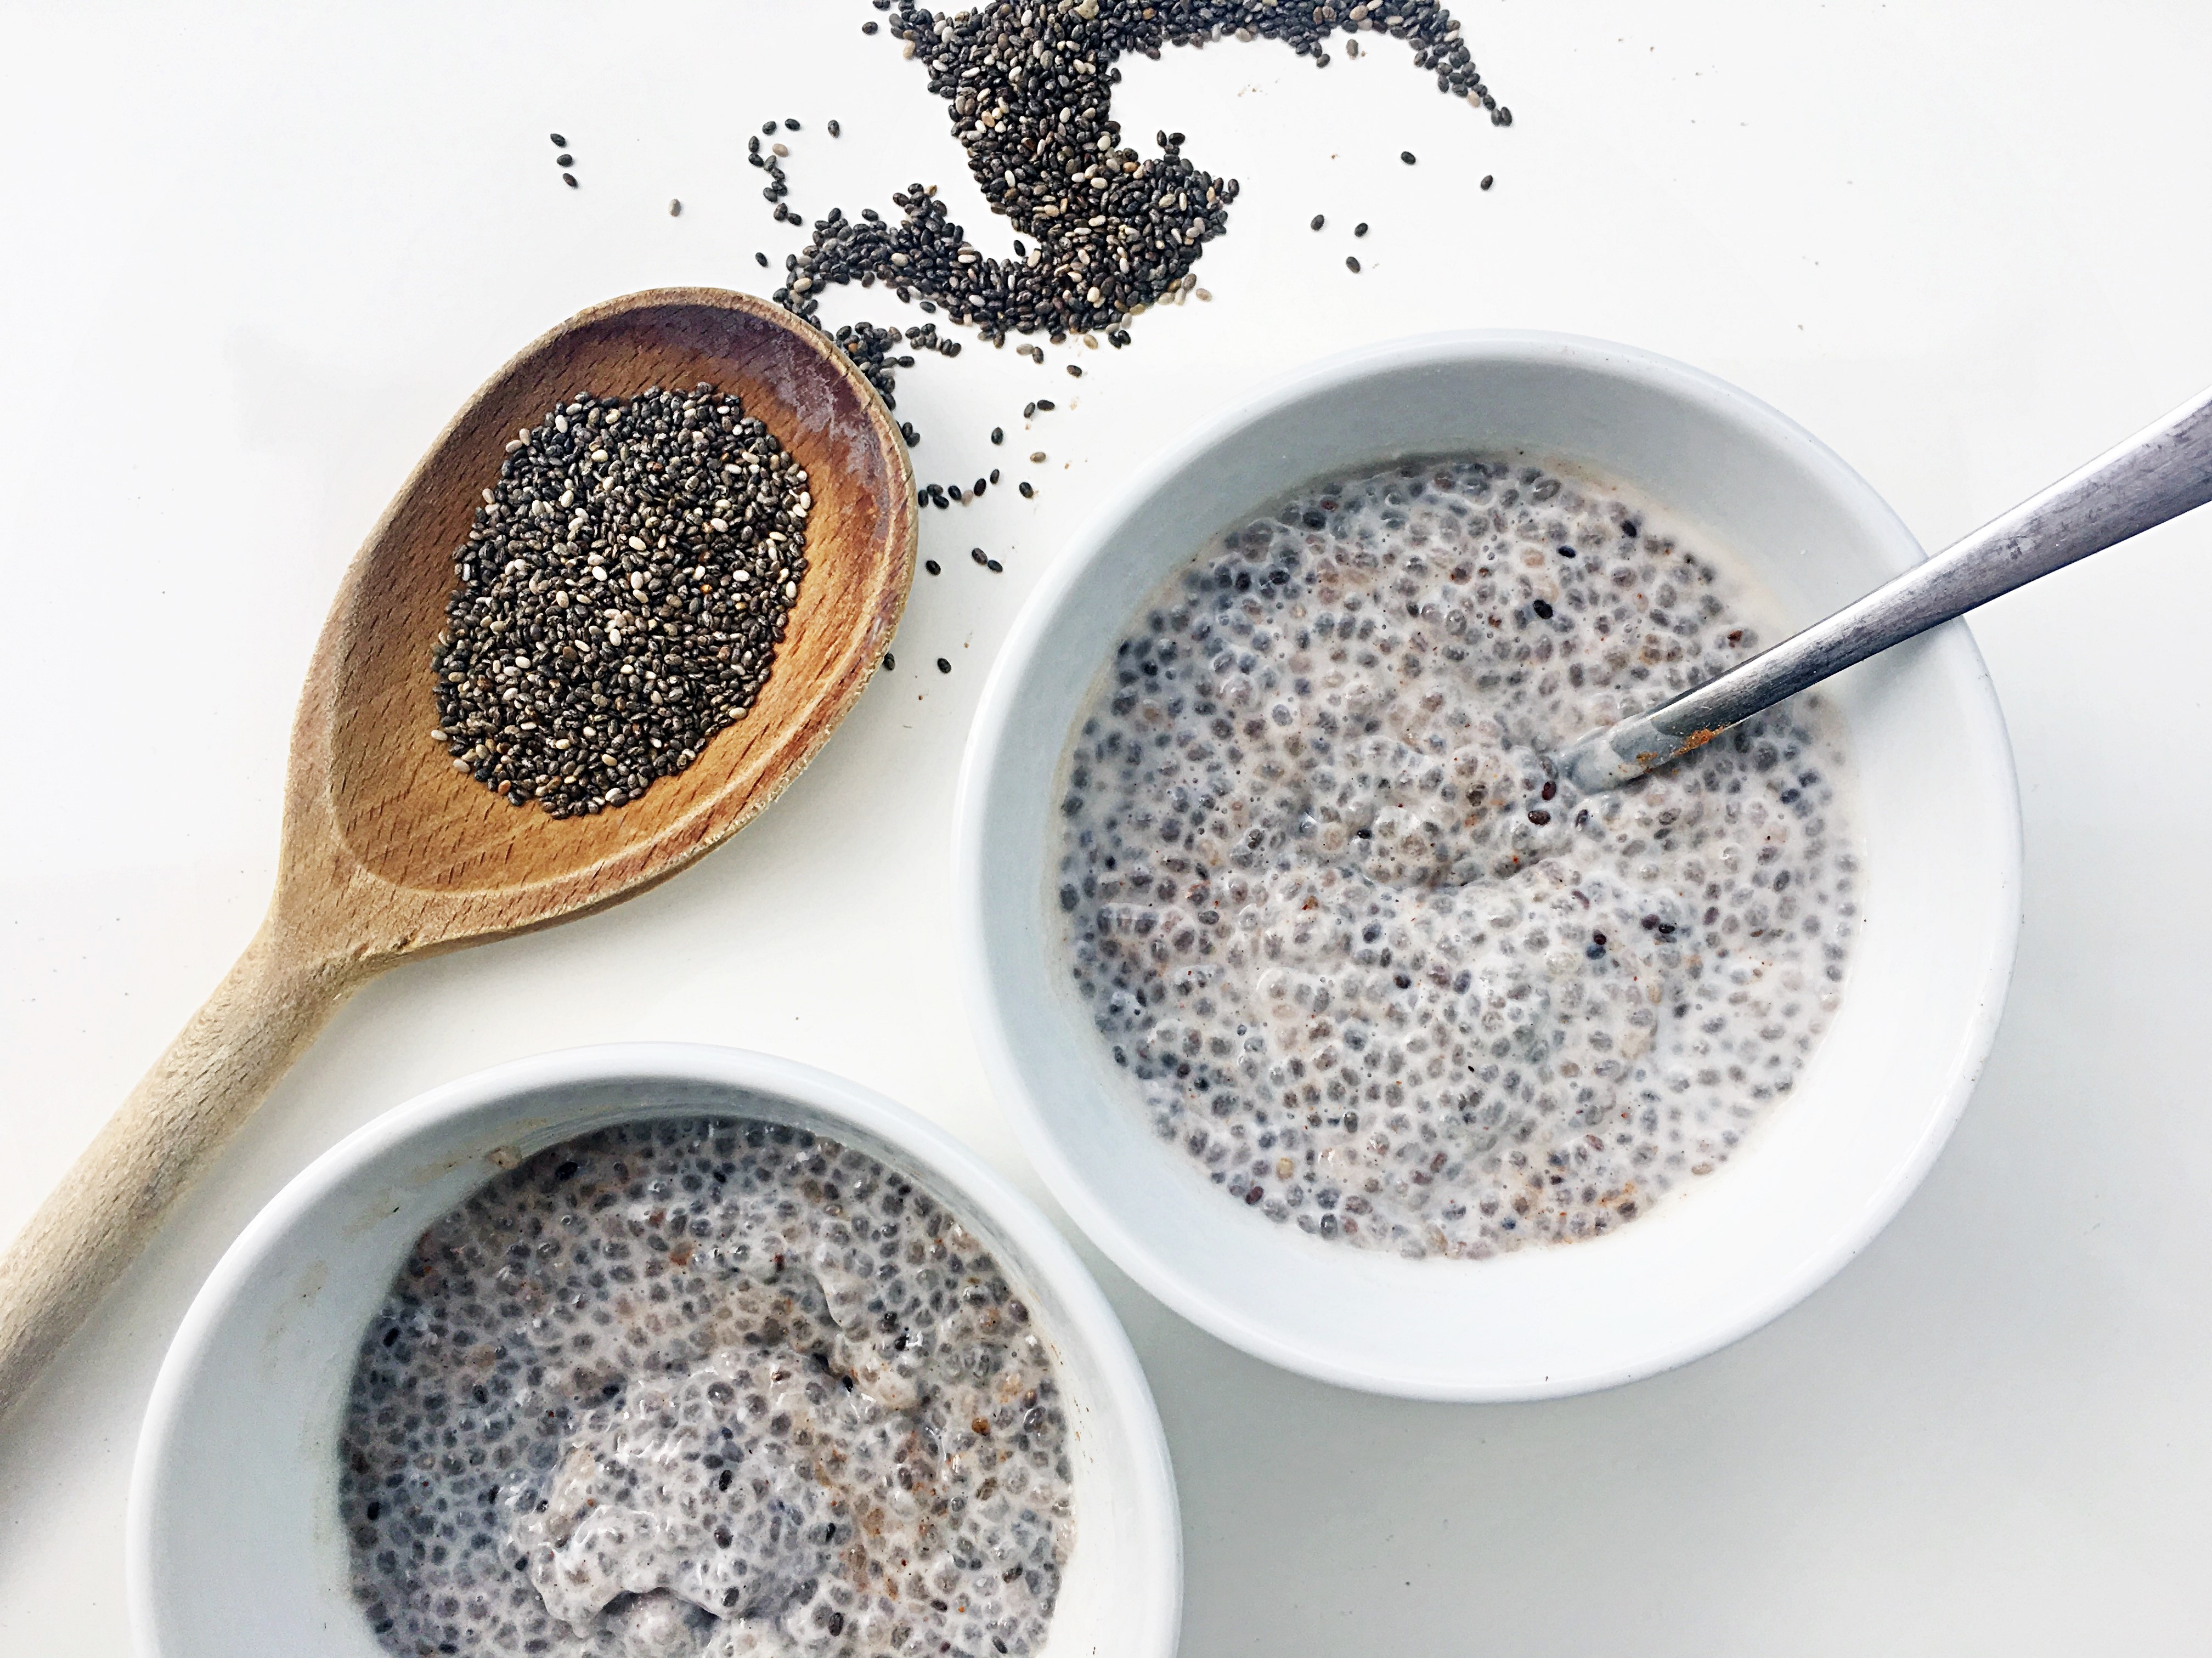 Les graines de chia contiennent de nombreux nutriments importants et peuvent être utilisées dans diverses recettes. De plus, ils constituent l’une des sources de fibres alimentaires les plus riches de la planète.